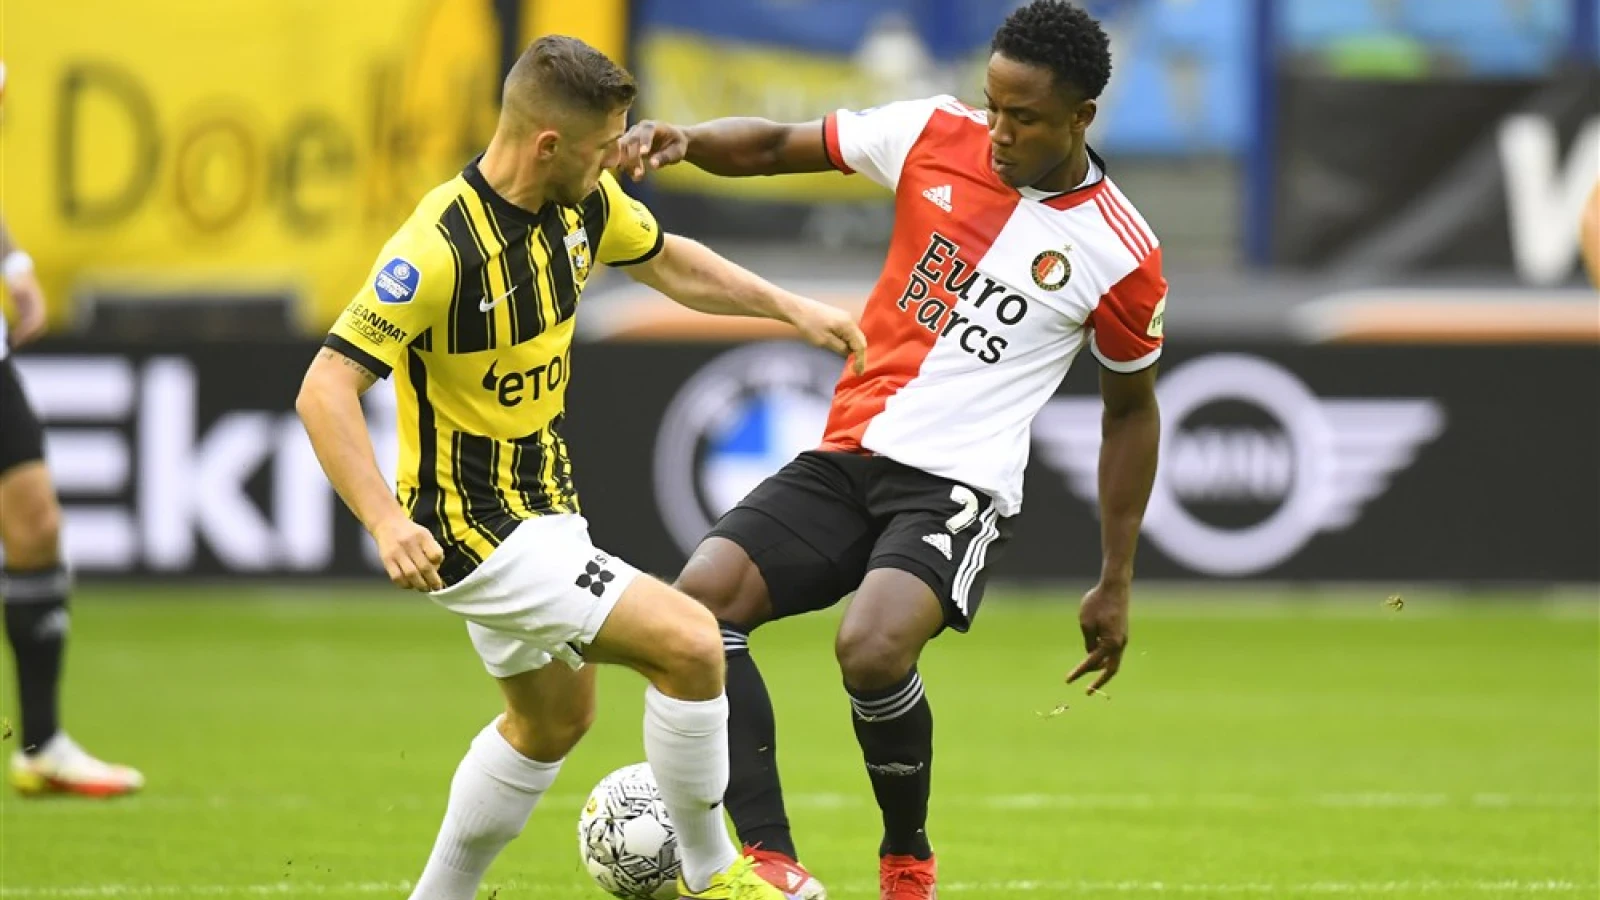 LIVE | Vitesse - Feyenoord 2-1 | Einde wedstrijd